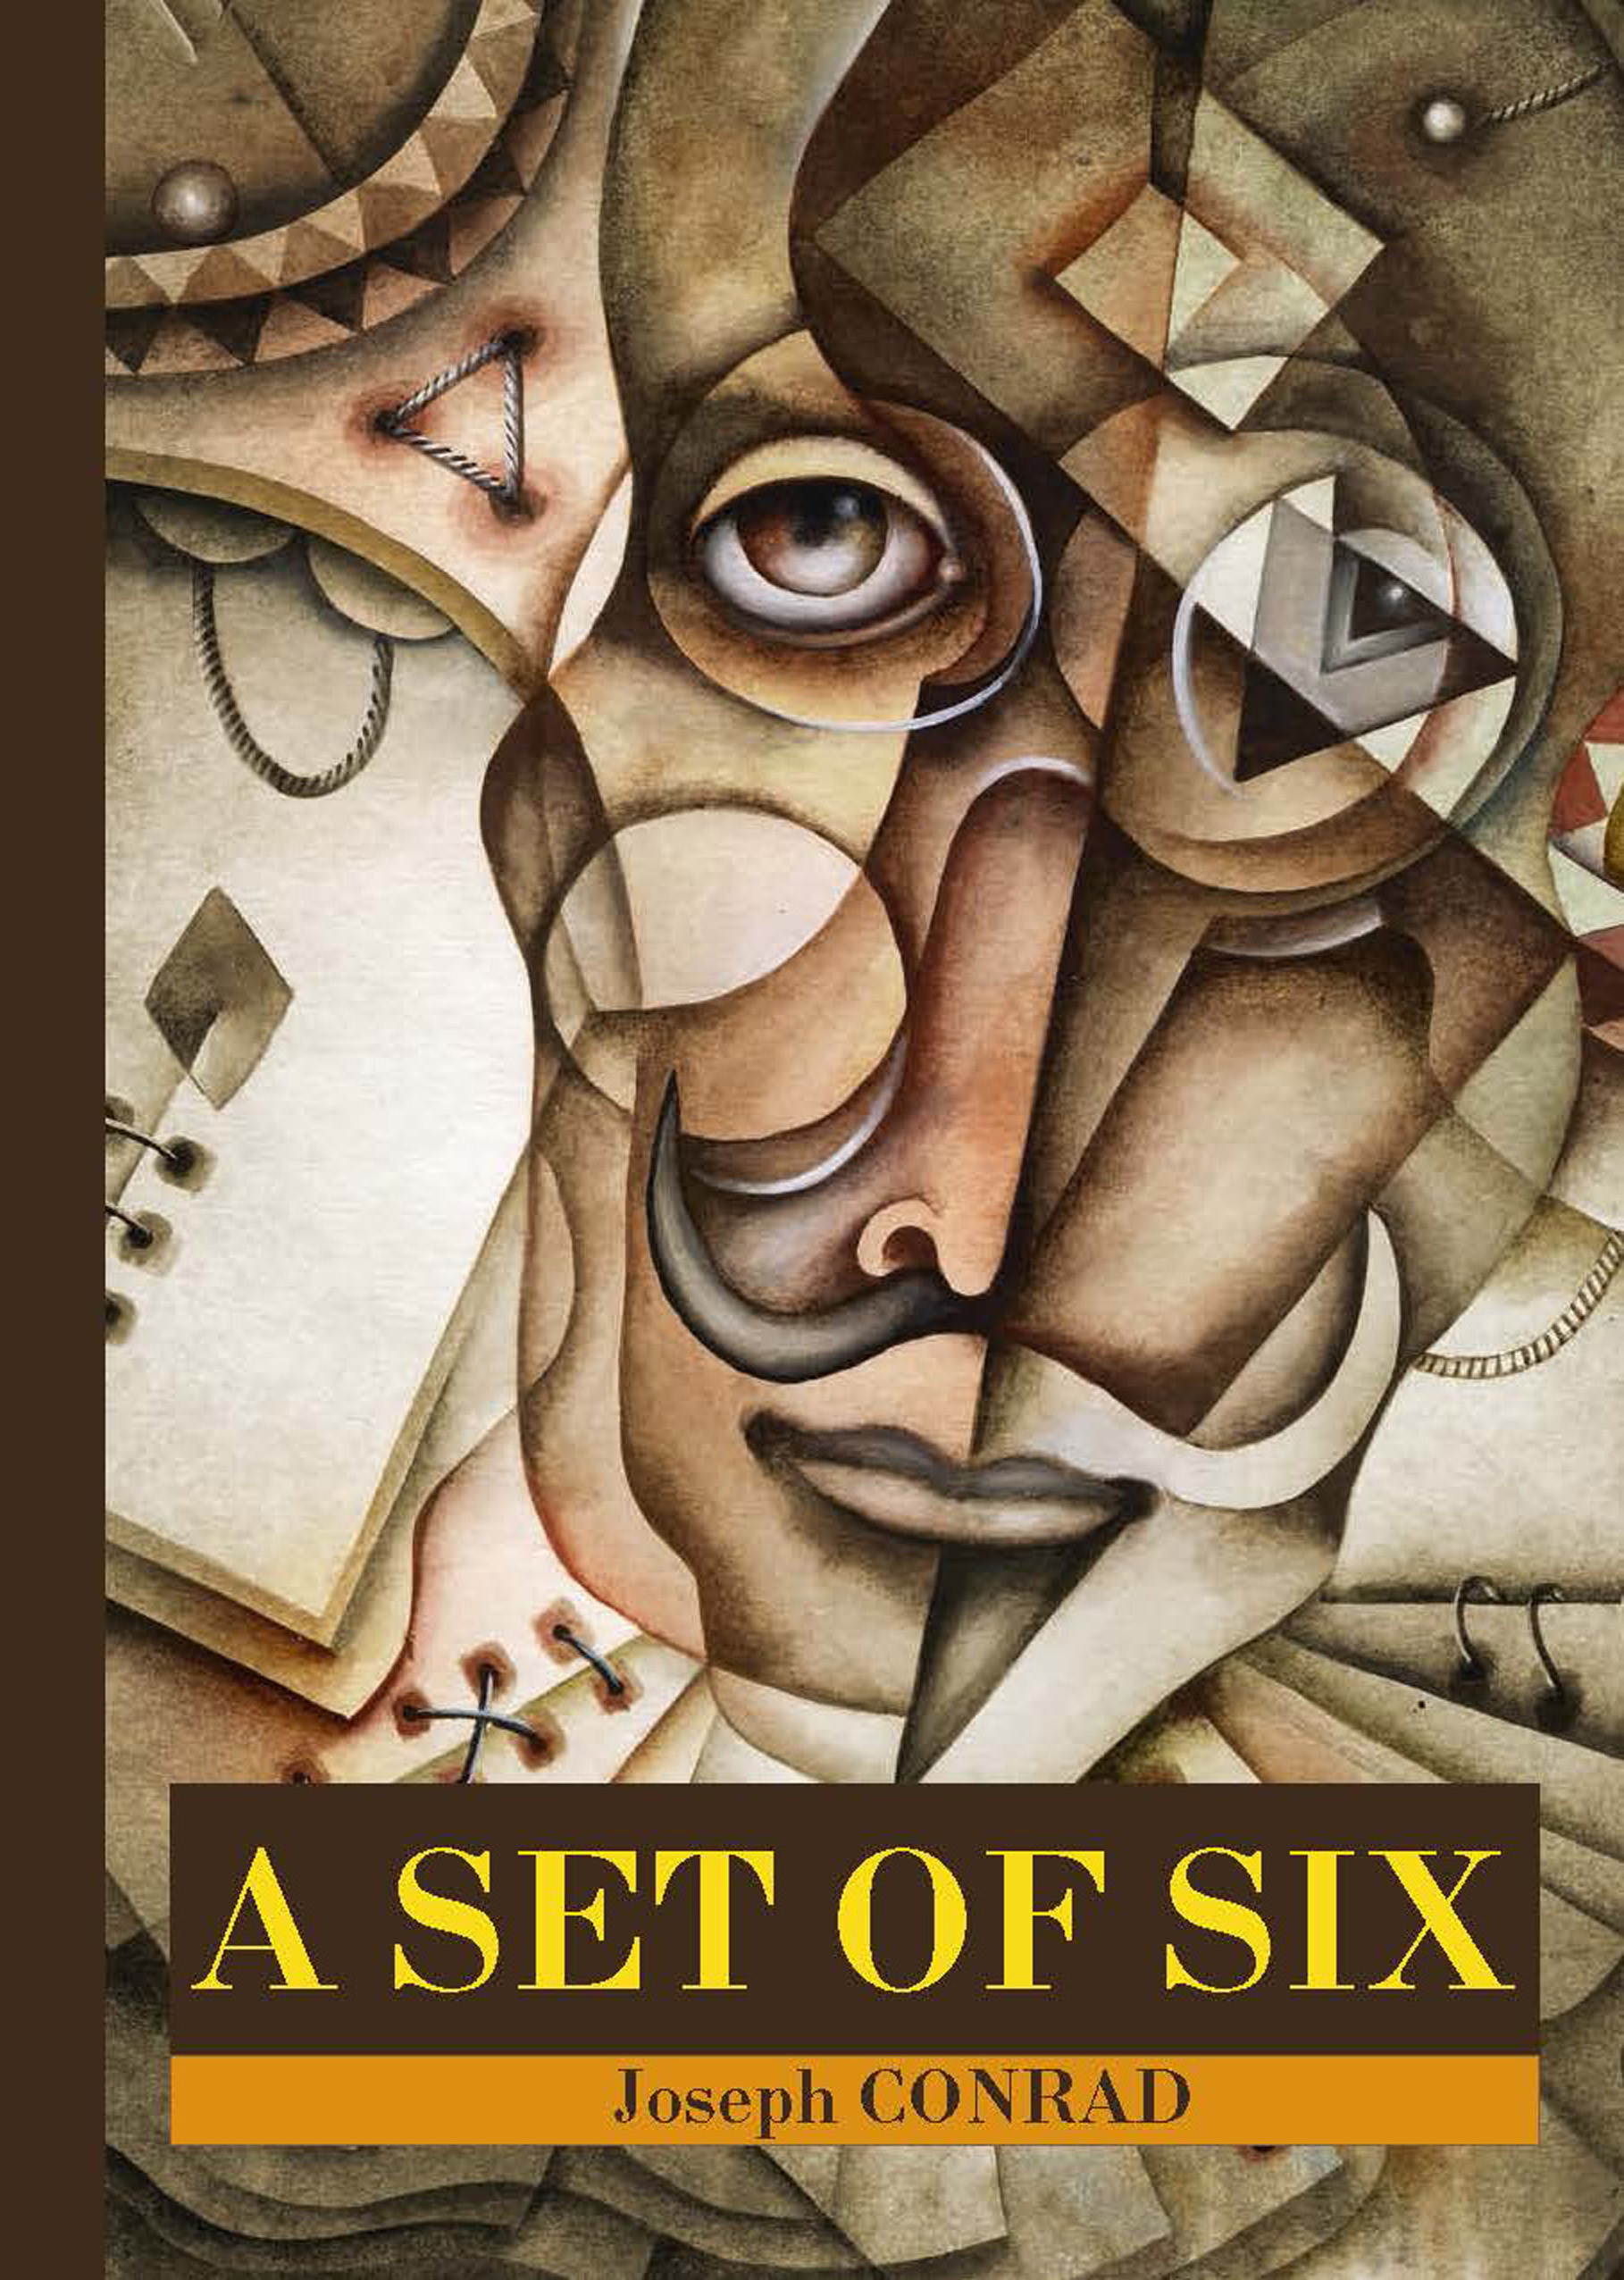 Книга A Set of Six из серии , созданная Джозеф Конрад, может относится к жанру Зарубежная классика, Литература 20 века. Стоимость электронной книги A Set of Six с идентификатором 31736393 составляет 149.00 руб.